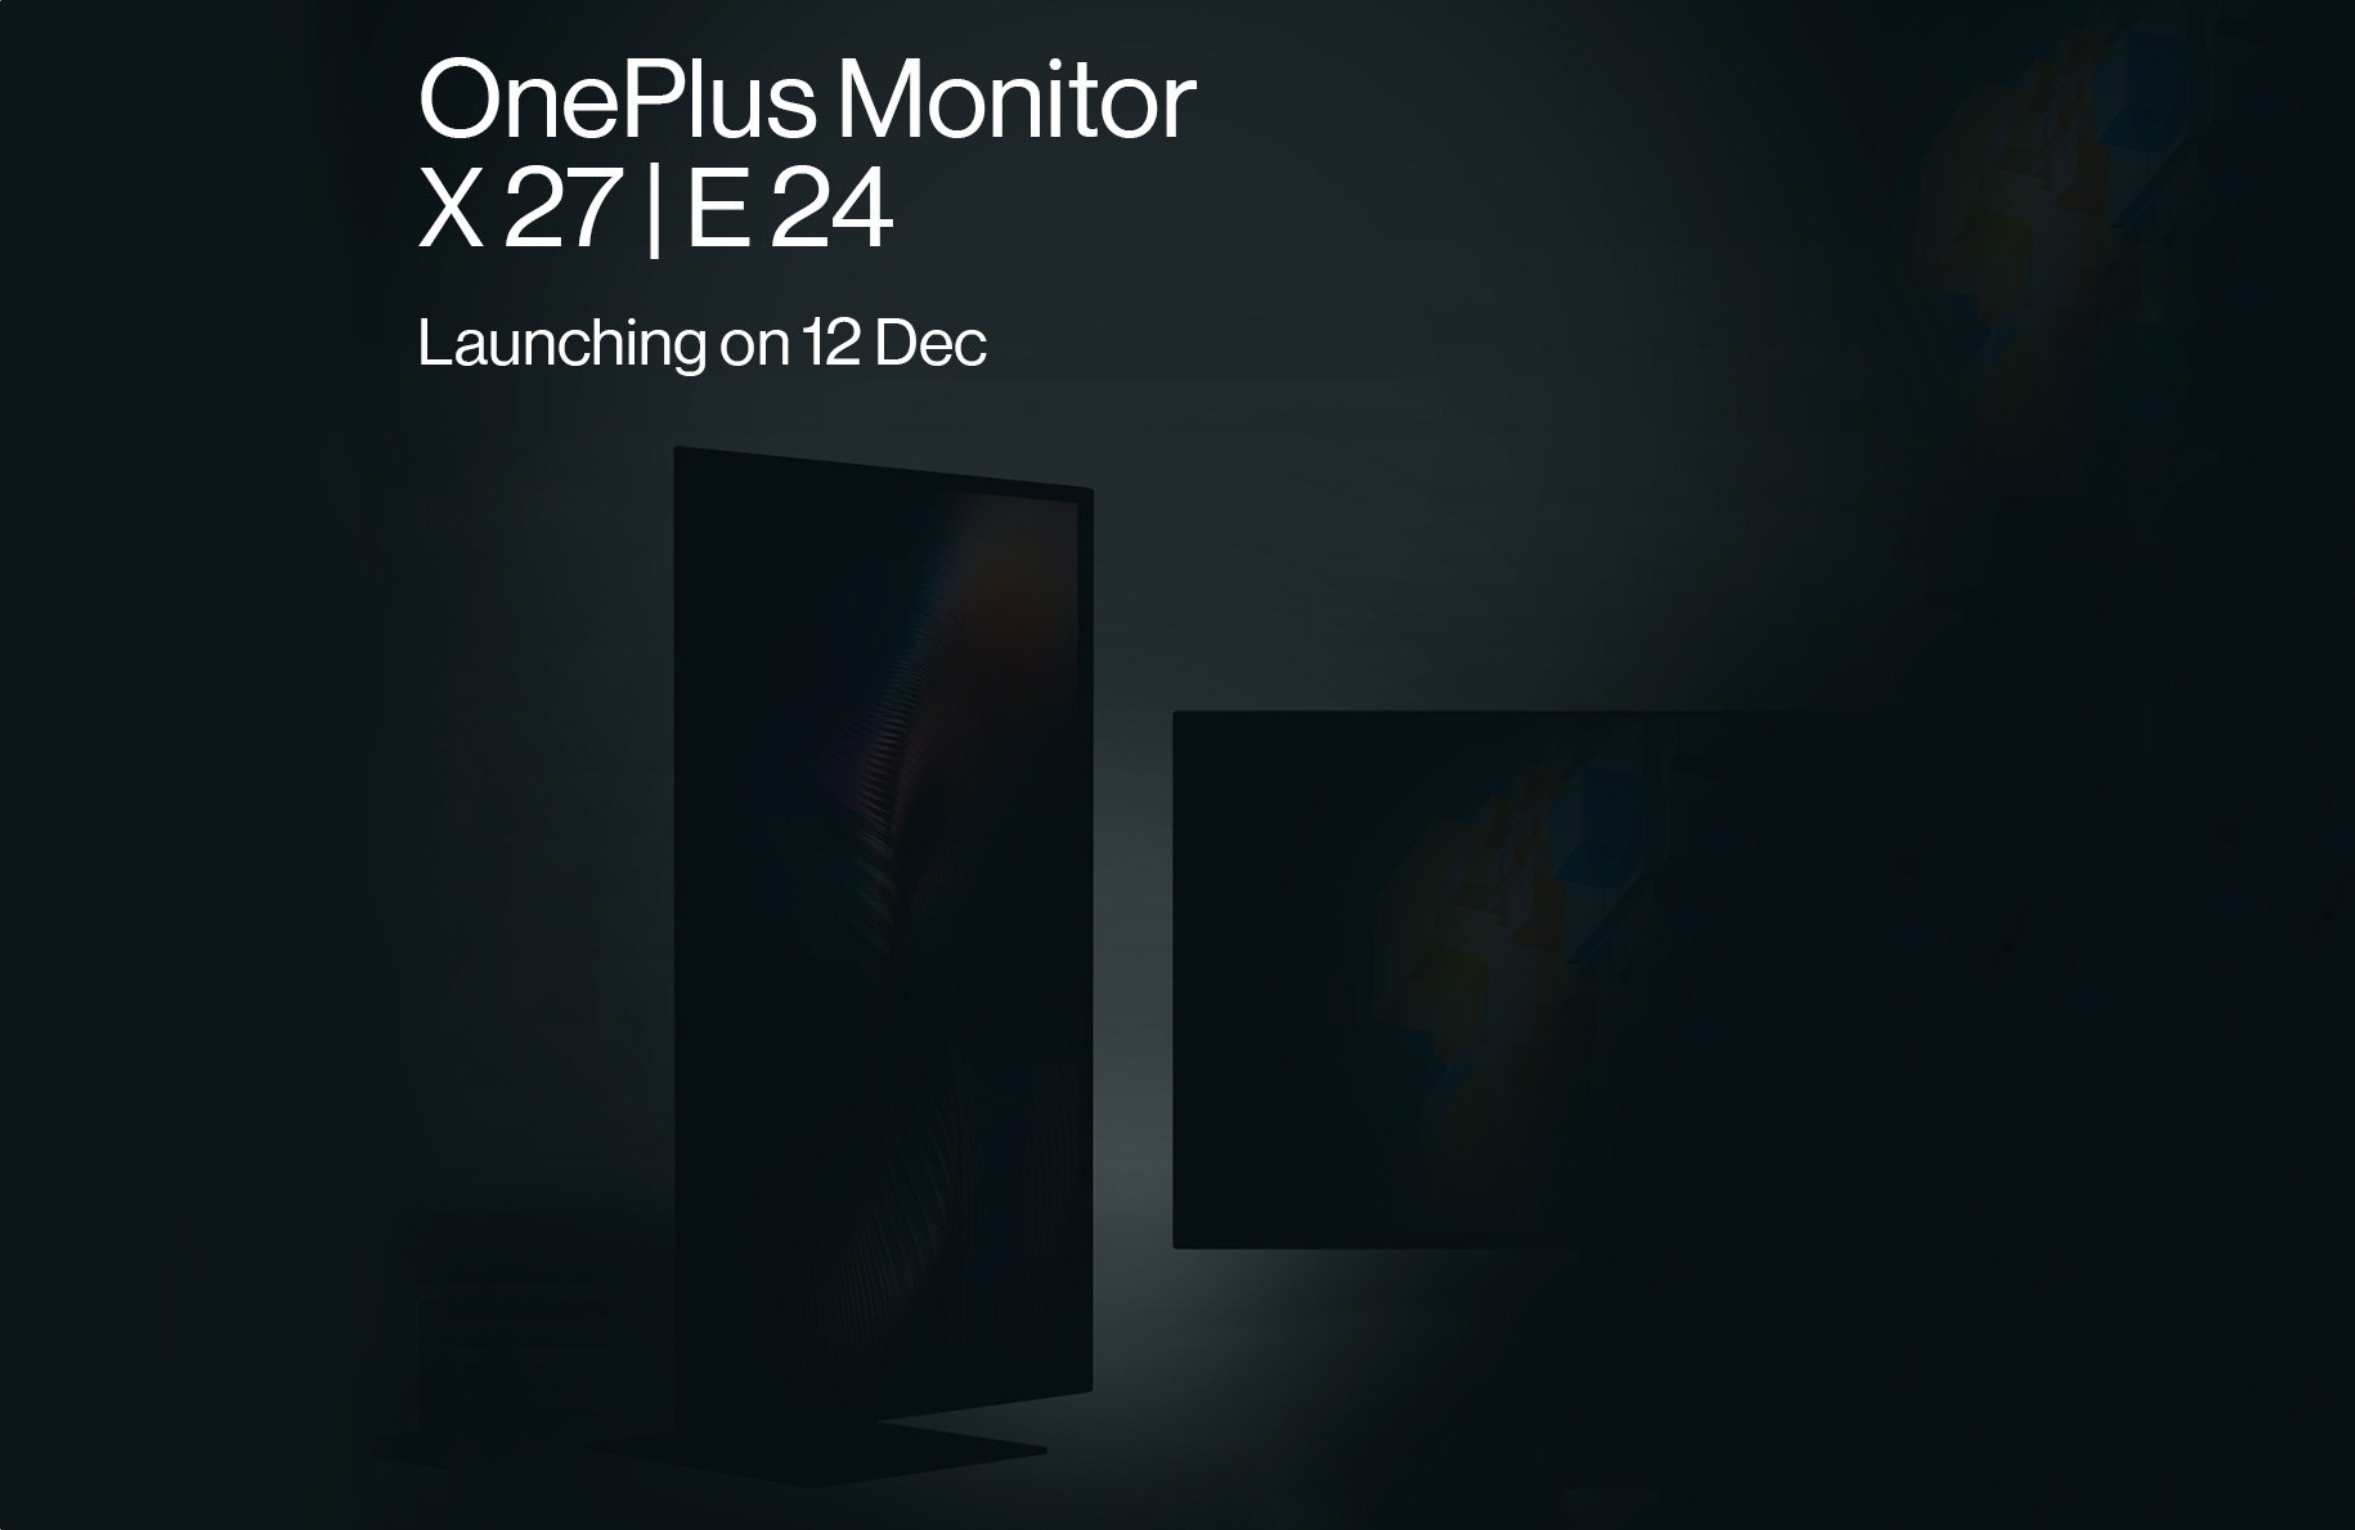 Niespodziewanie! OnePlus ma odsłonić monitory X27 i E24 12 grudnia